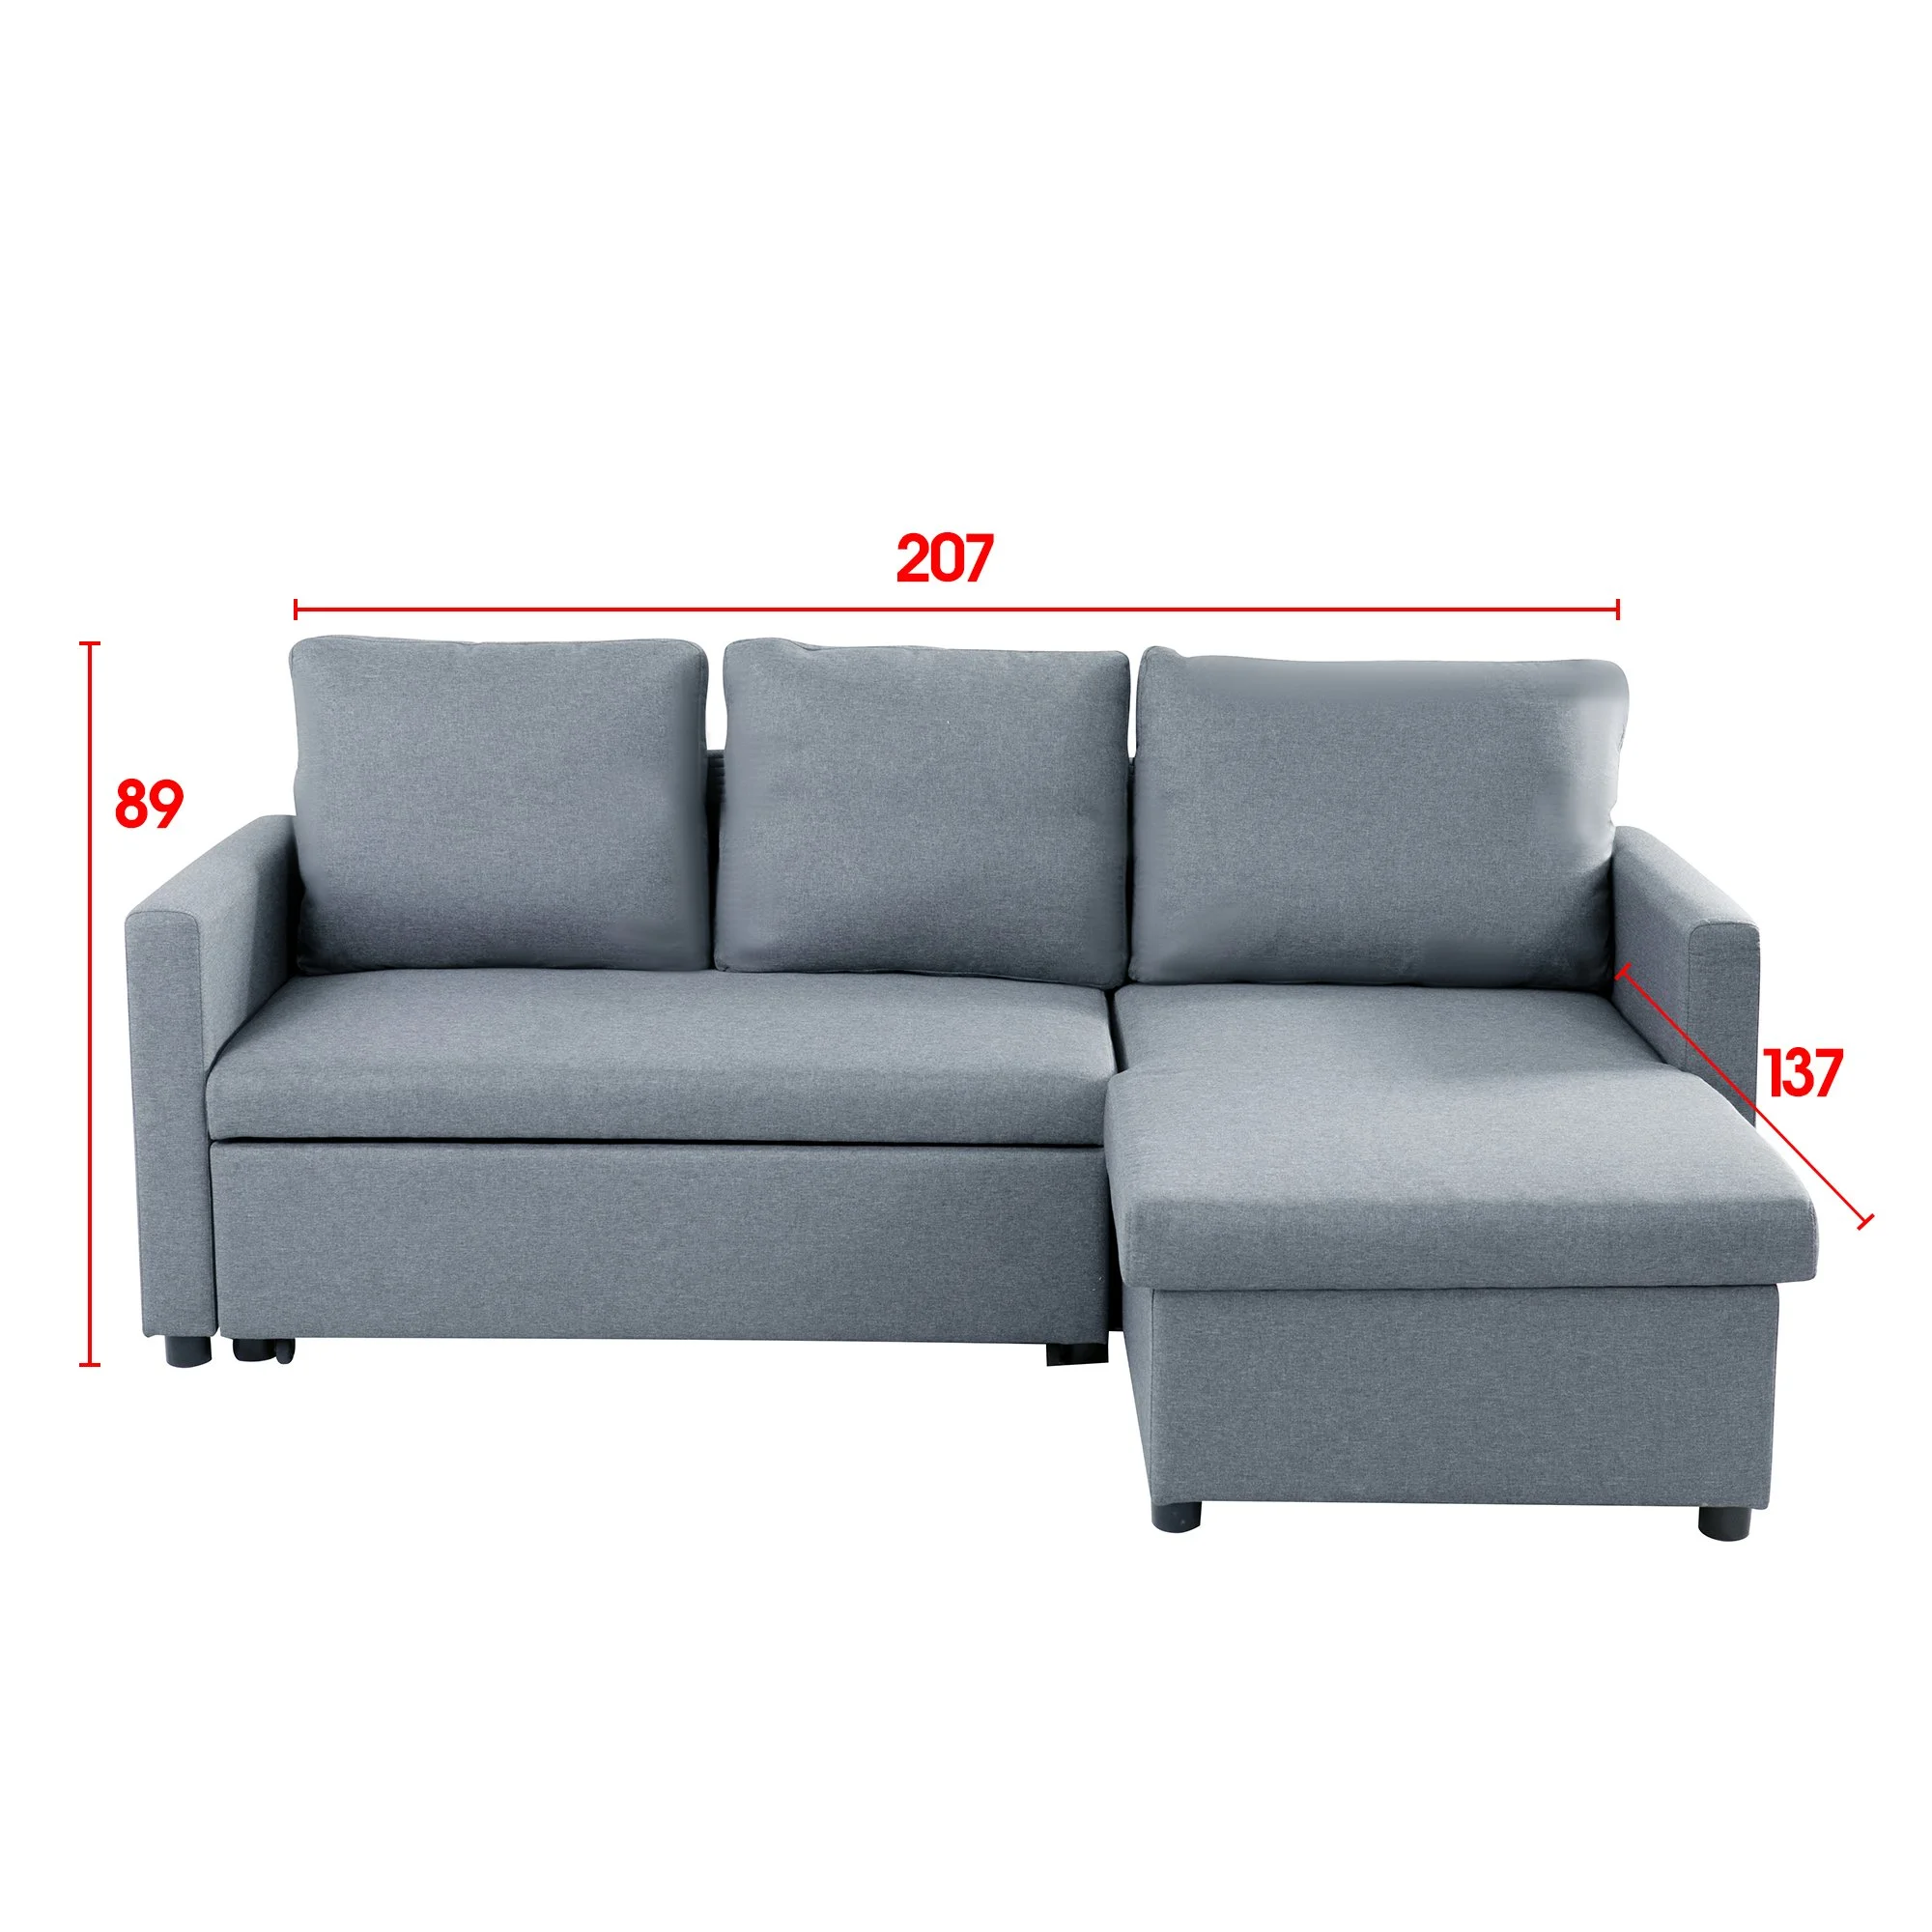 DREAMO Sofa Bed Size